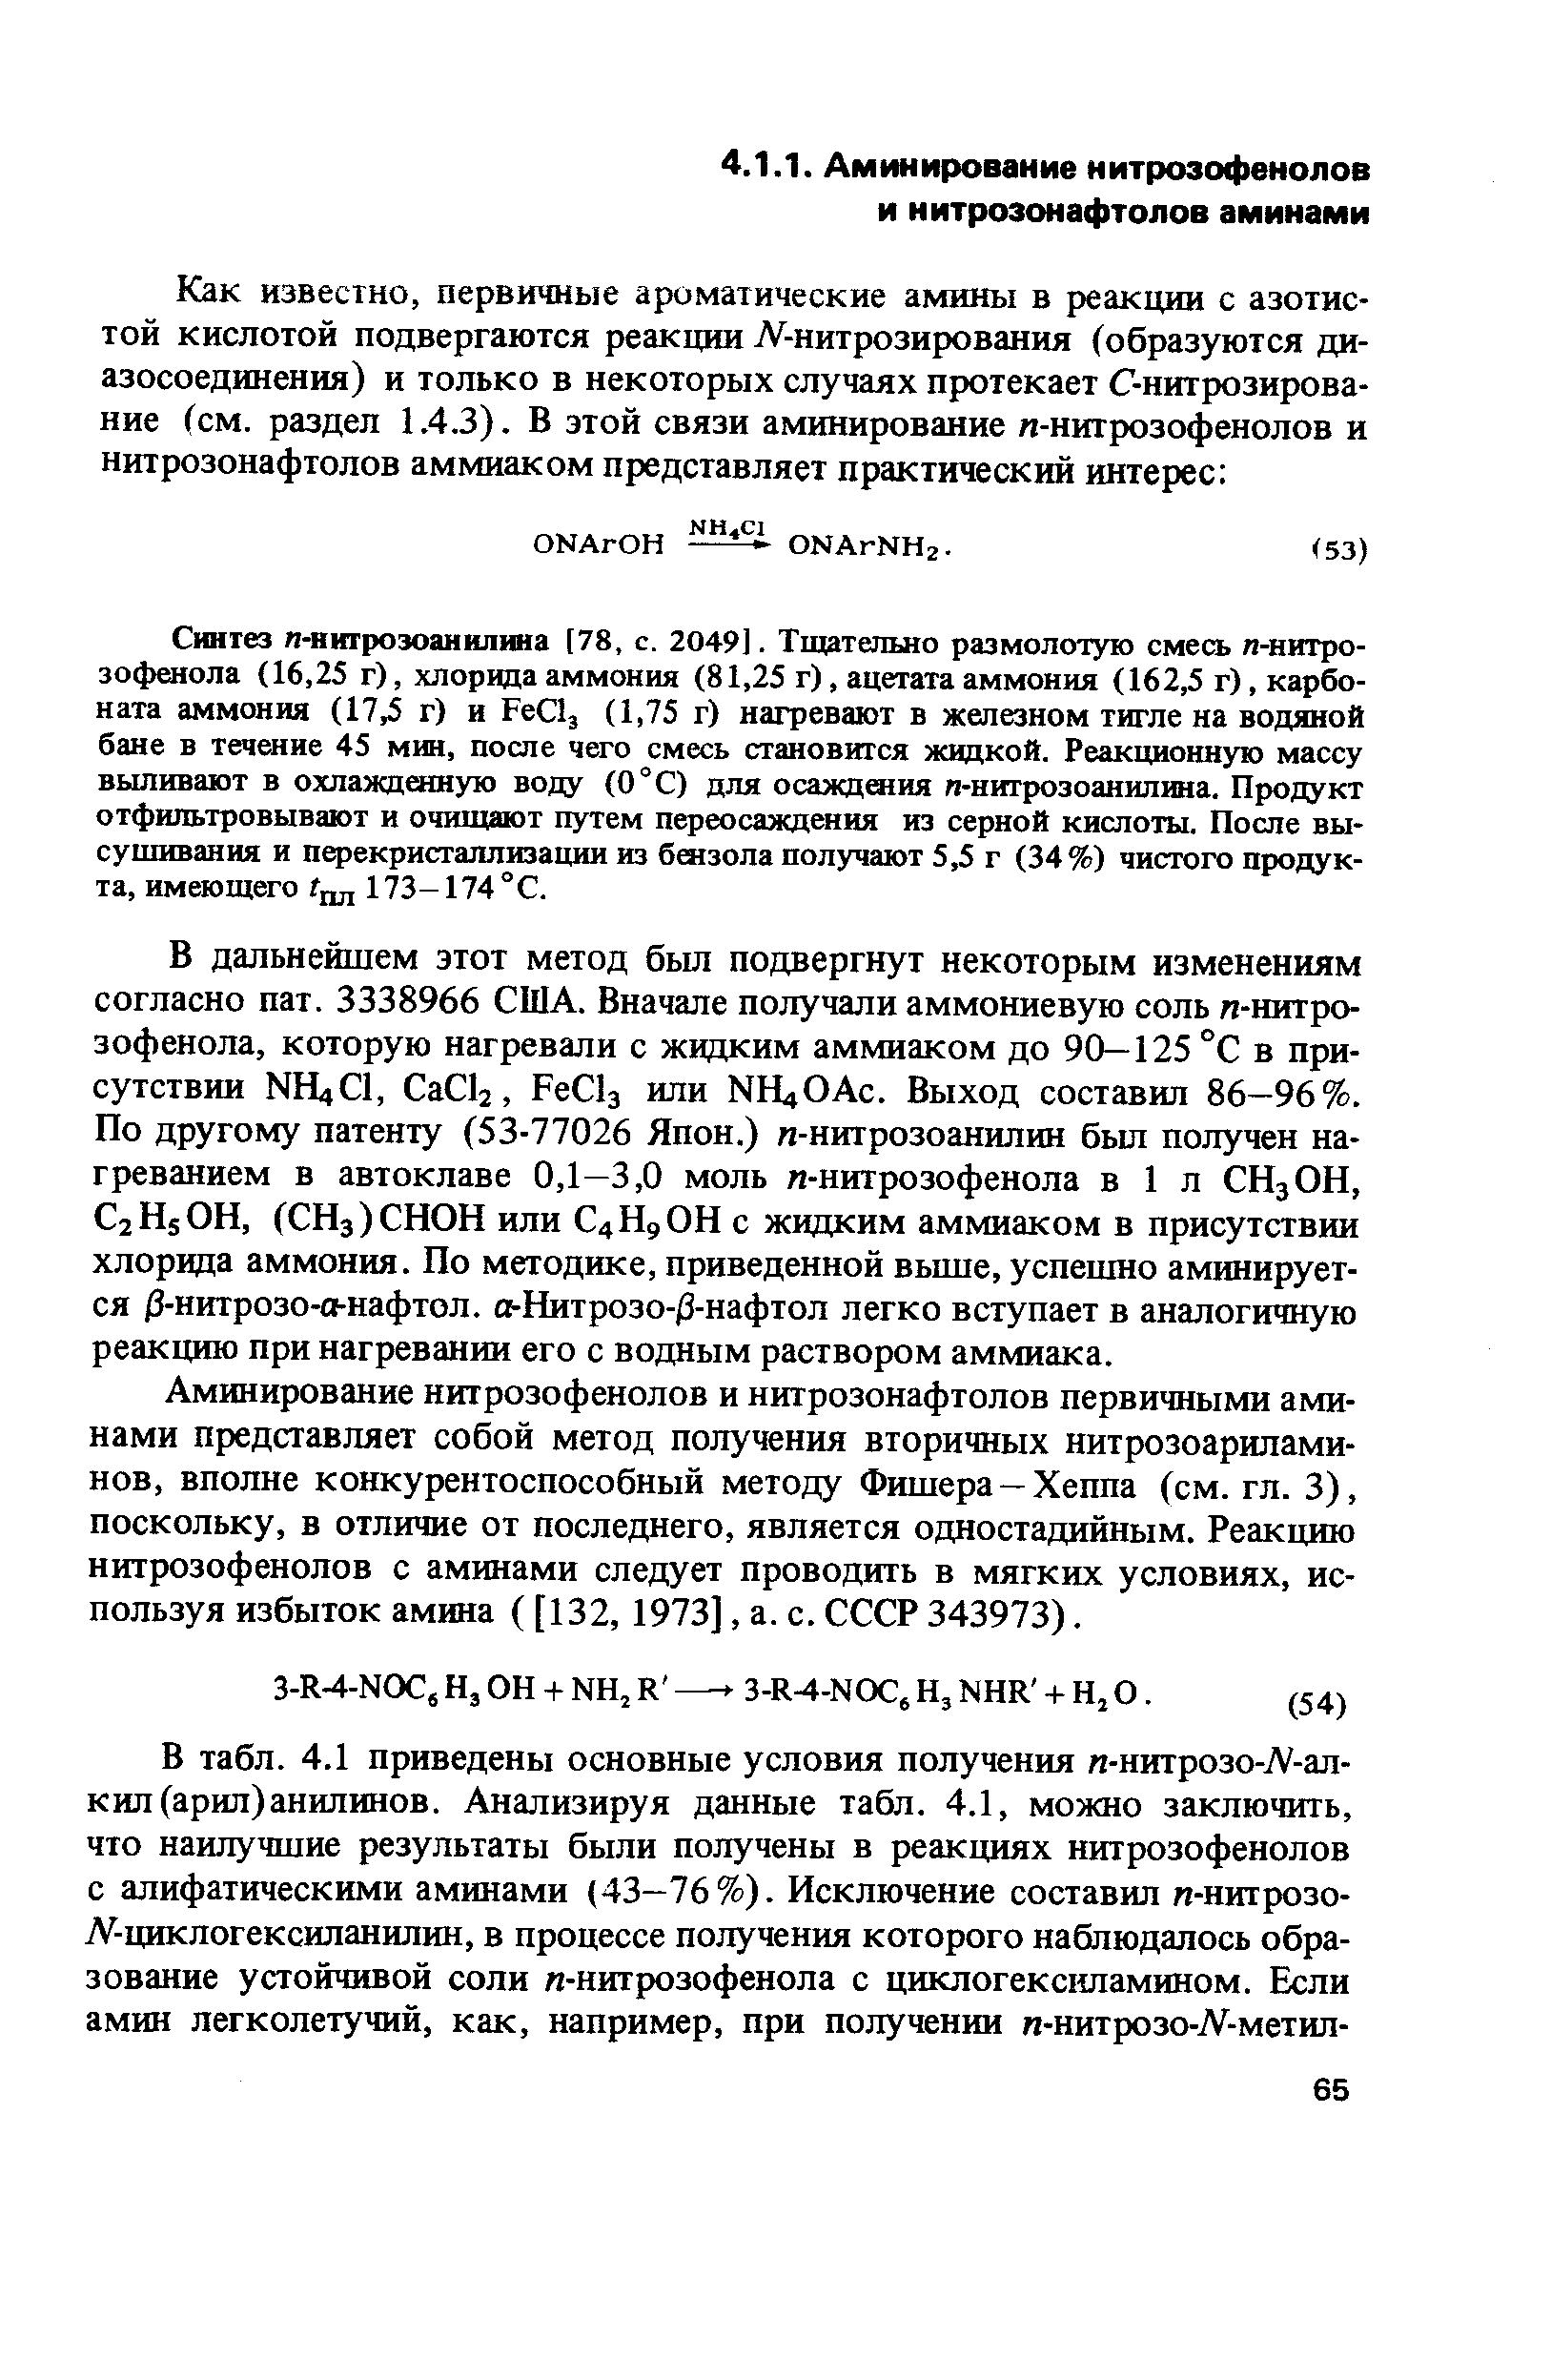 Аминирование нитрозофенолов и нитрозонафтолов первичными аминами представляет собой метод получения вторичных нитрозоариламинов, вполне конкурентоспособный методу Фишера-Хеппа (см. гл. 3), поскольку, в отличие от последнего, является одностадийным. Реакцию нитрозофенолов с аминами следует проводить в мягких условиях, используя избыток амина ([132, 1973], а. с. СССР 343973).